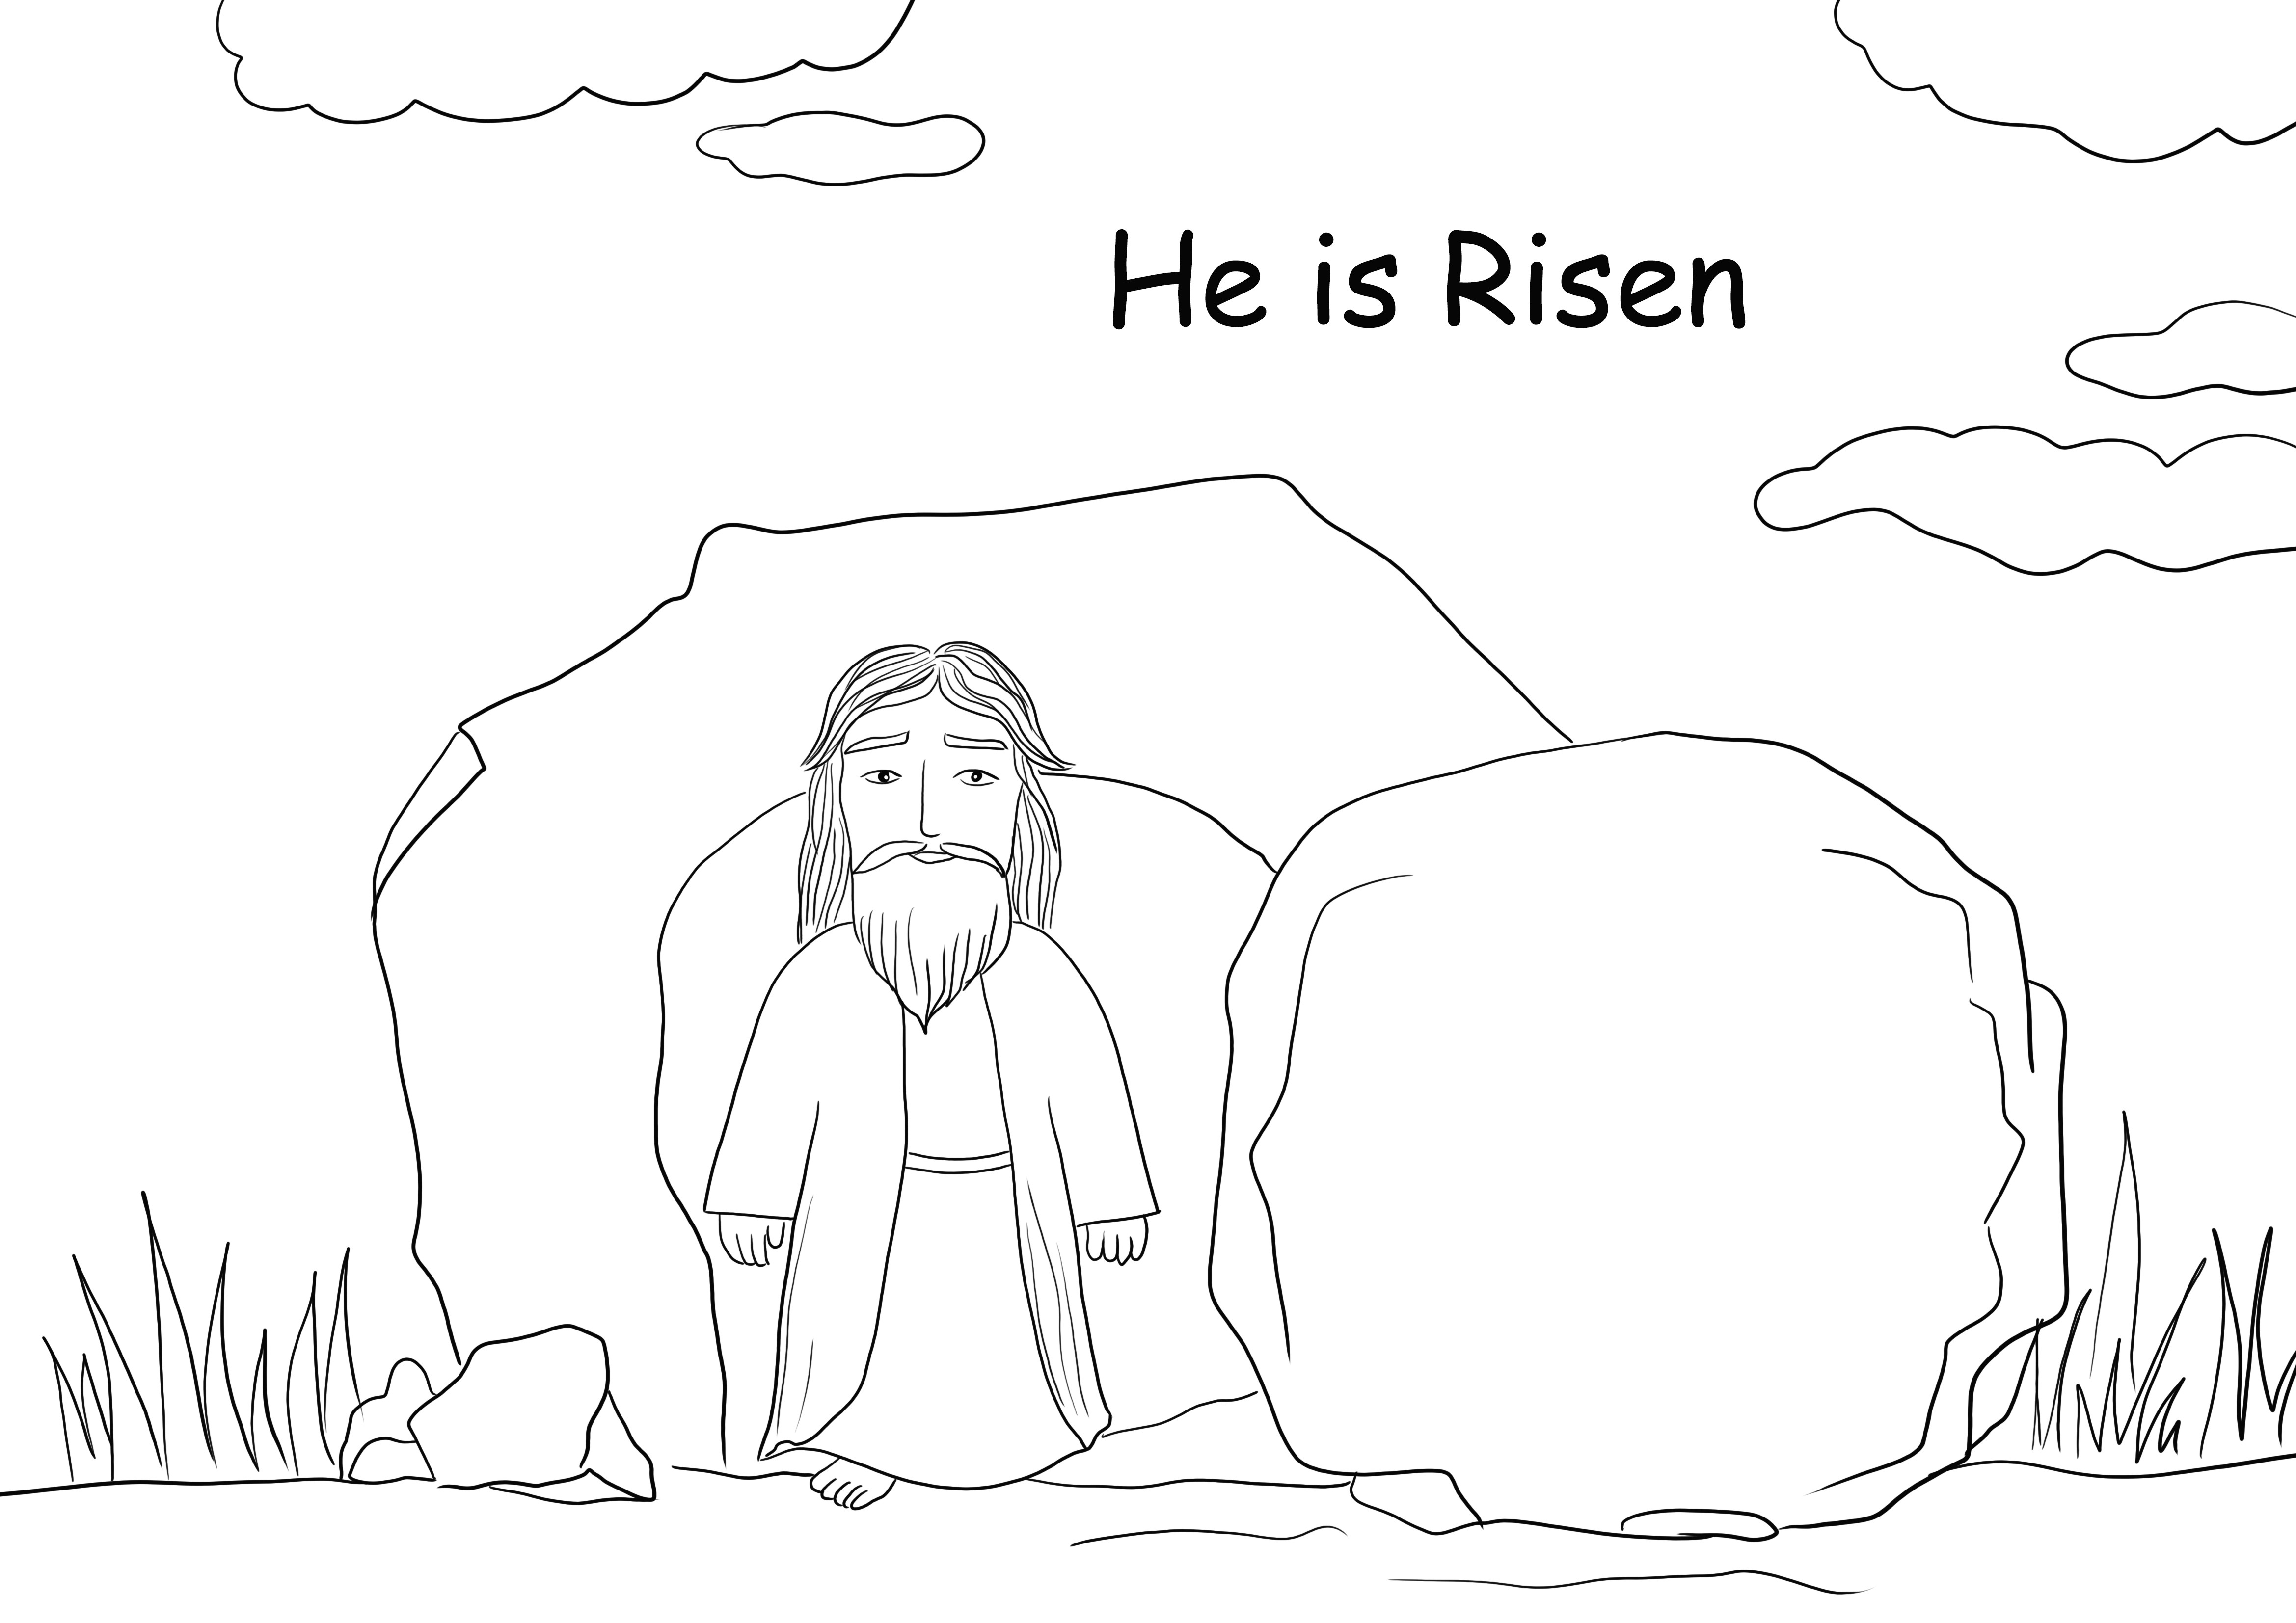 Die Auferstehung Jesu zum Ausmalen kostenlos ausdrucken oder für später speichern und ausmalen